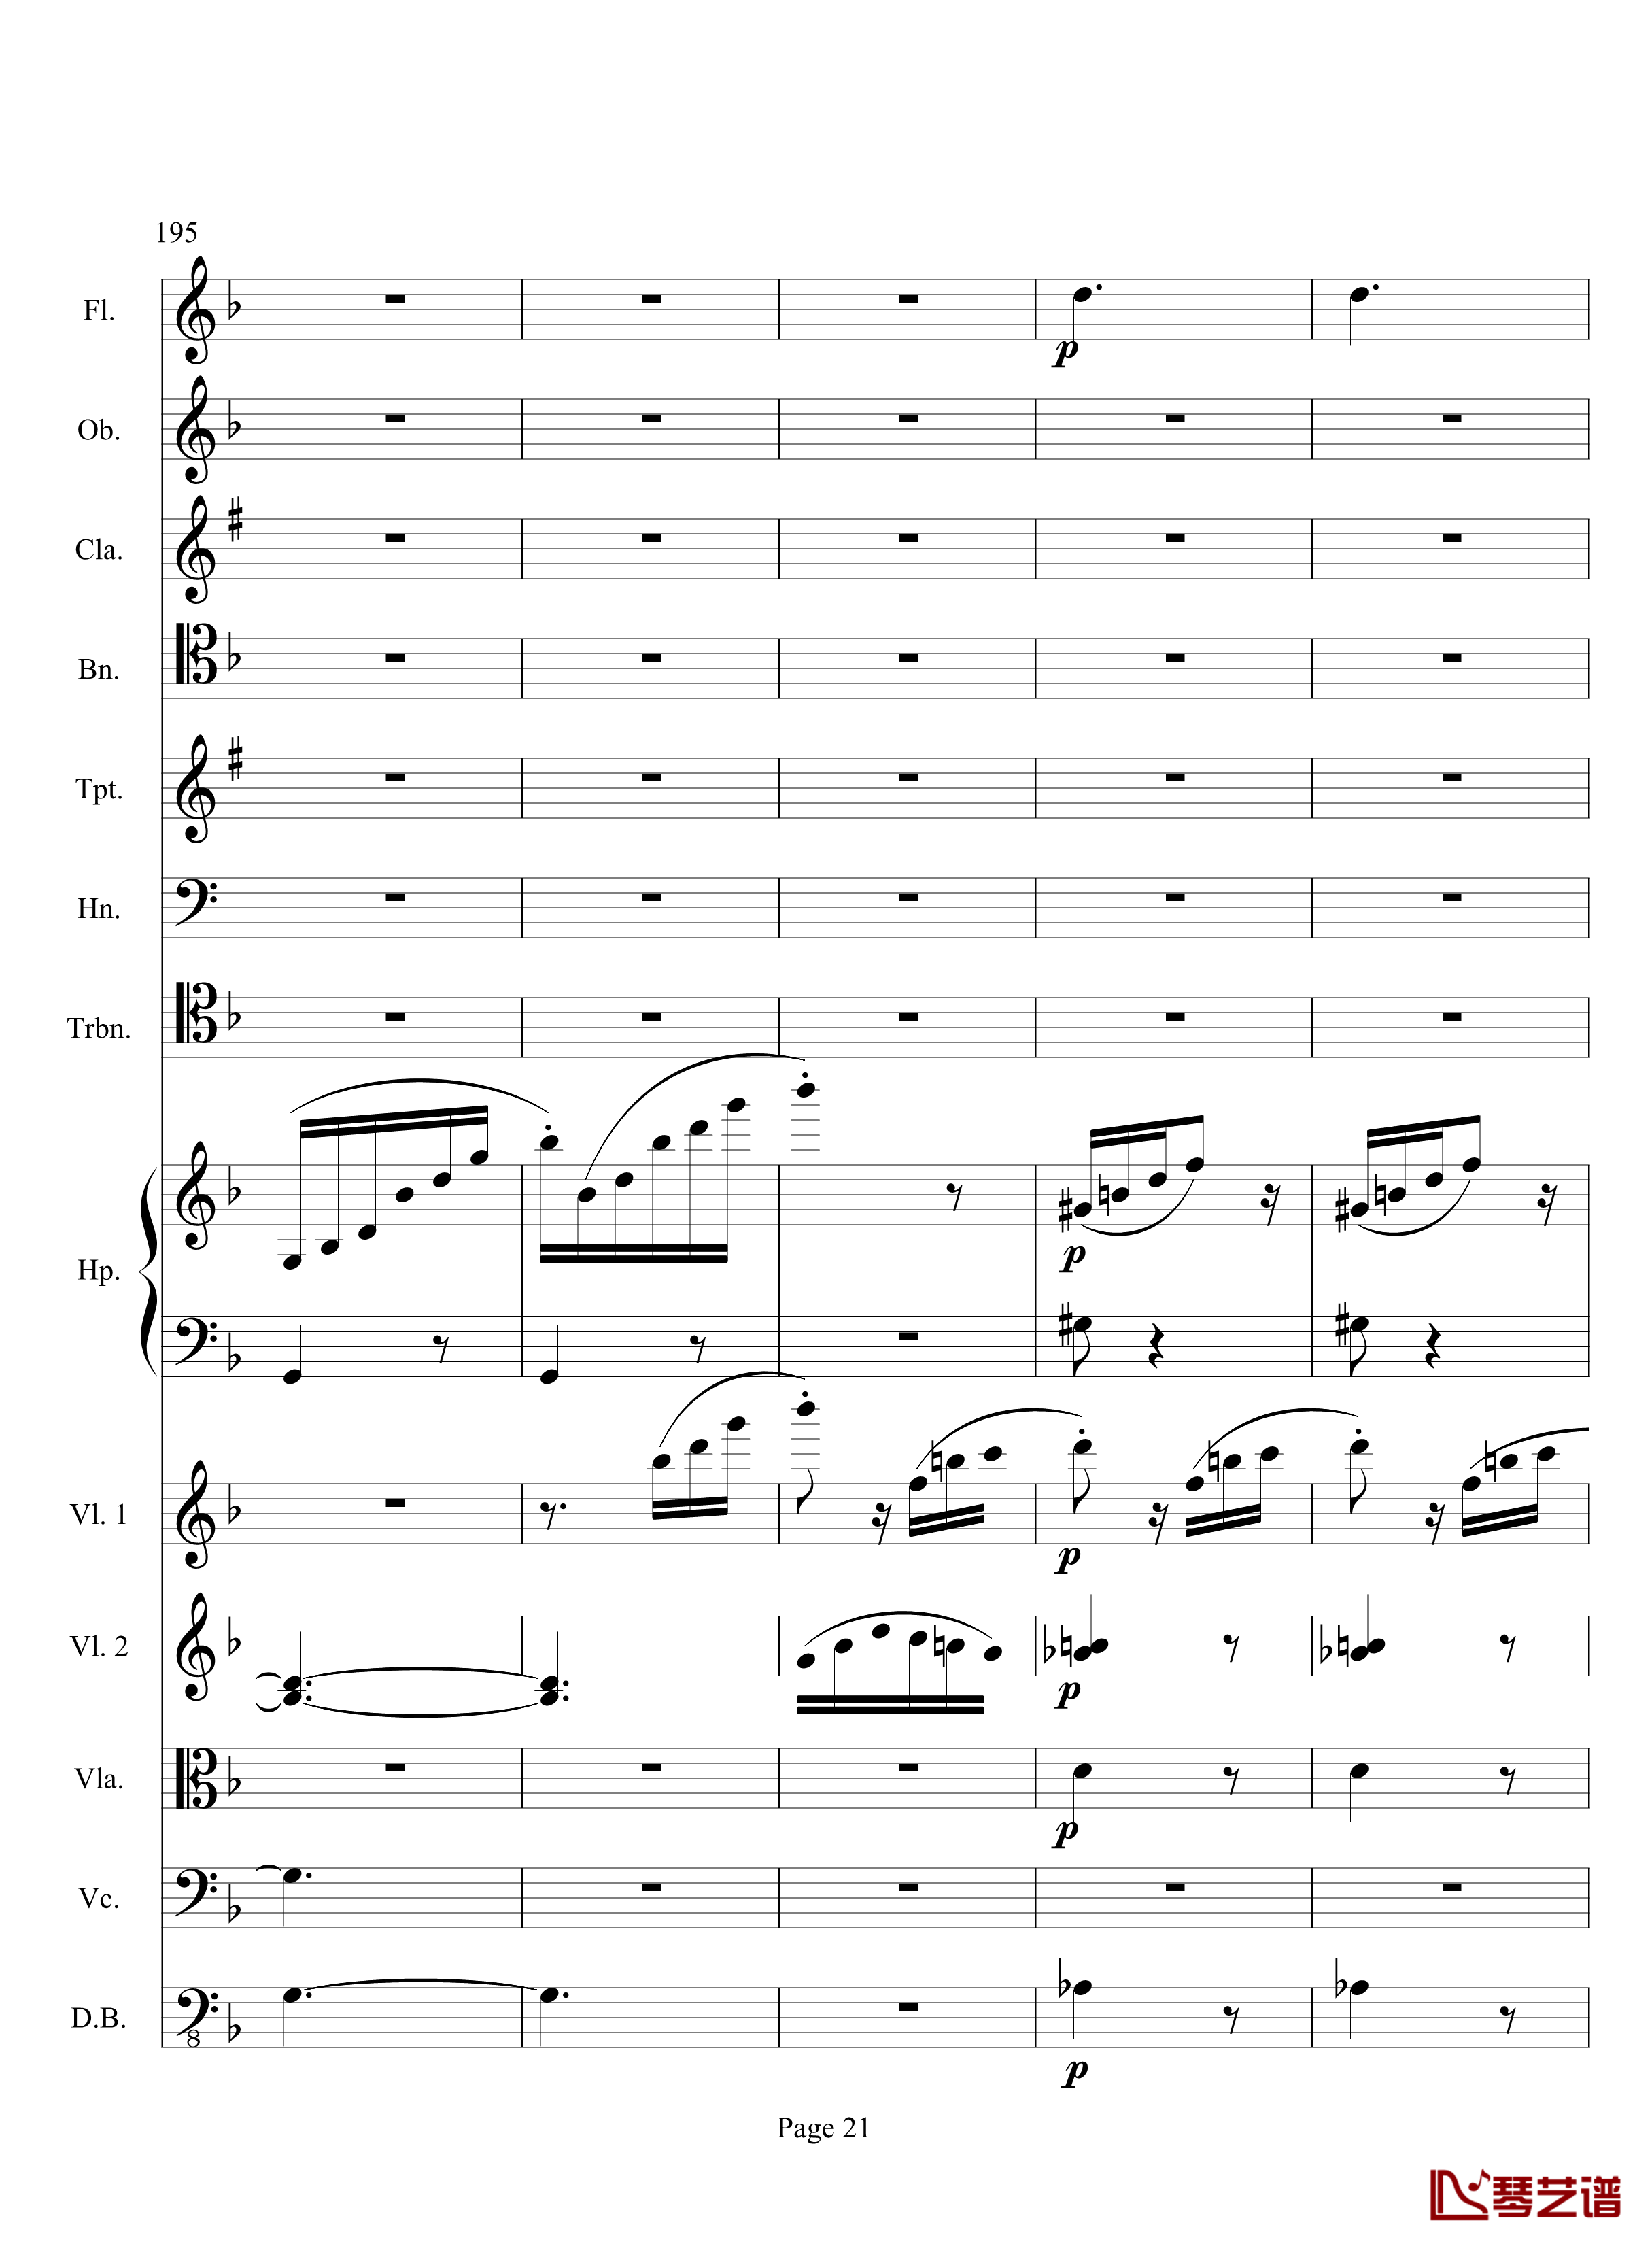 奏鸣曲之交响钢琴谱-第17首-Ⅲ-贝多芬-beethoven21